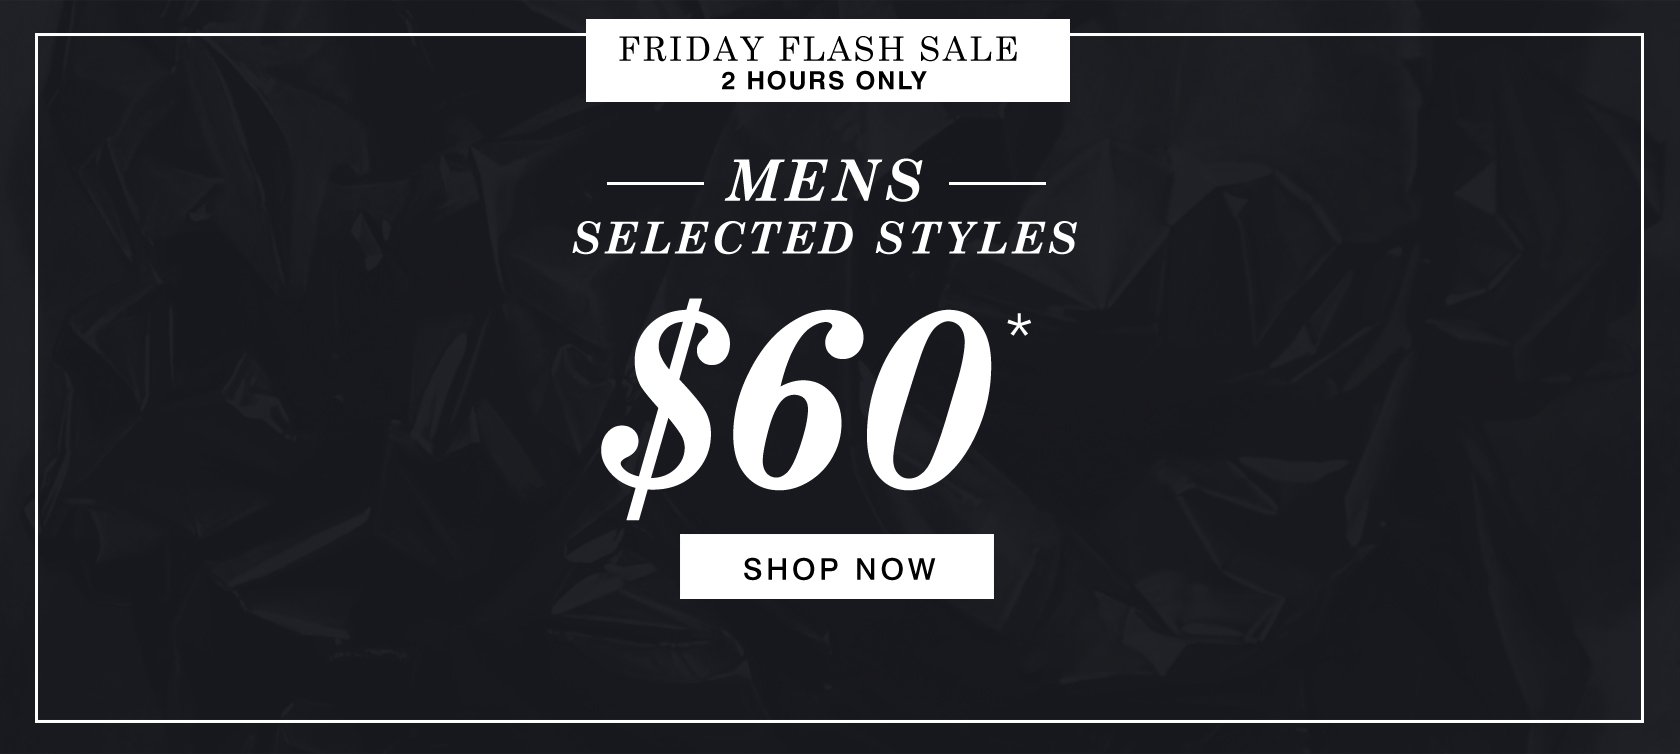 时尚品牌Hush Puppies 几款男士鞋子今日中午购买只要$60！